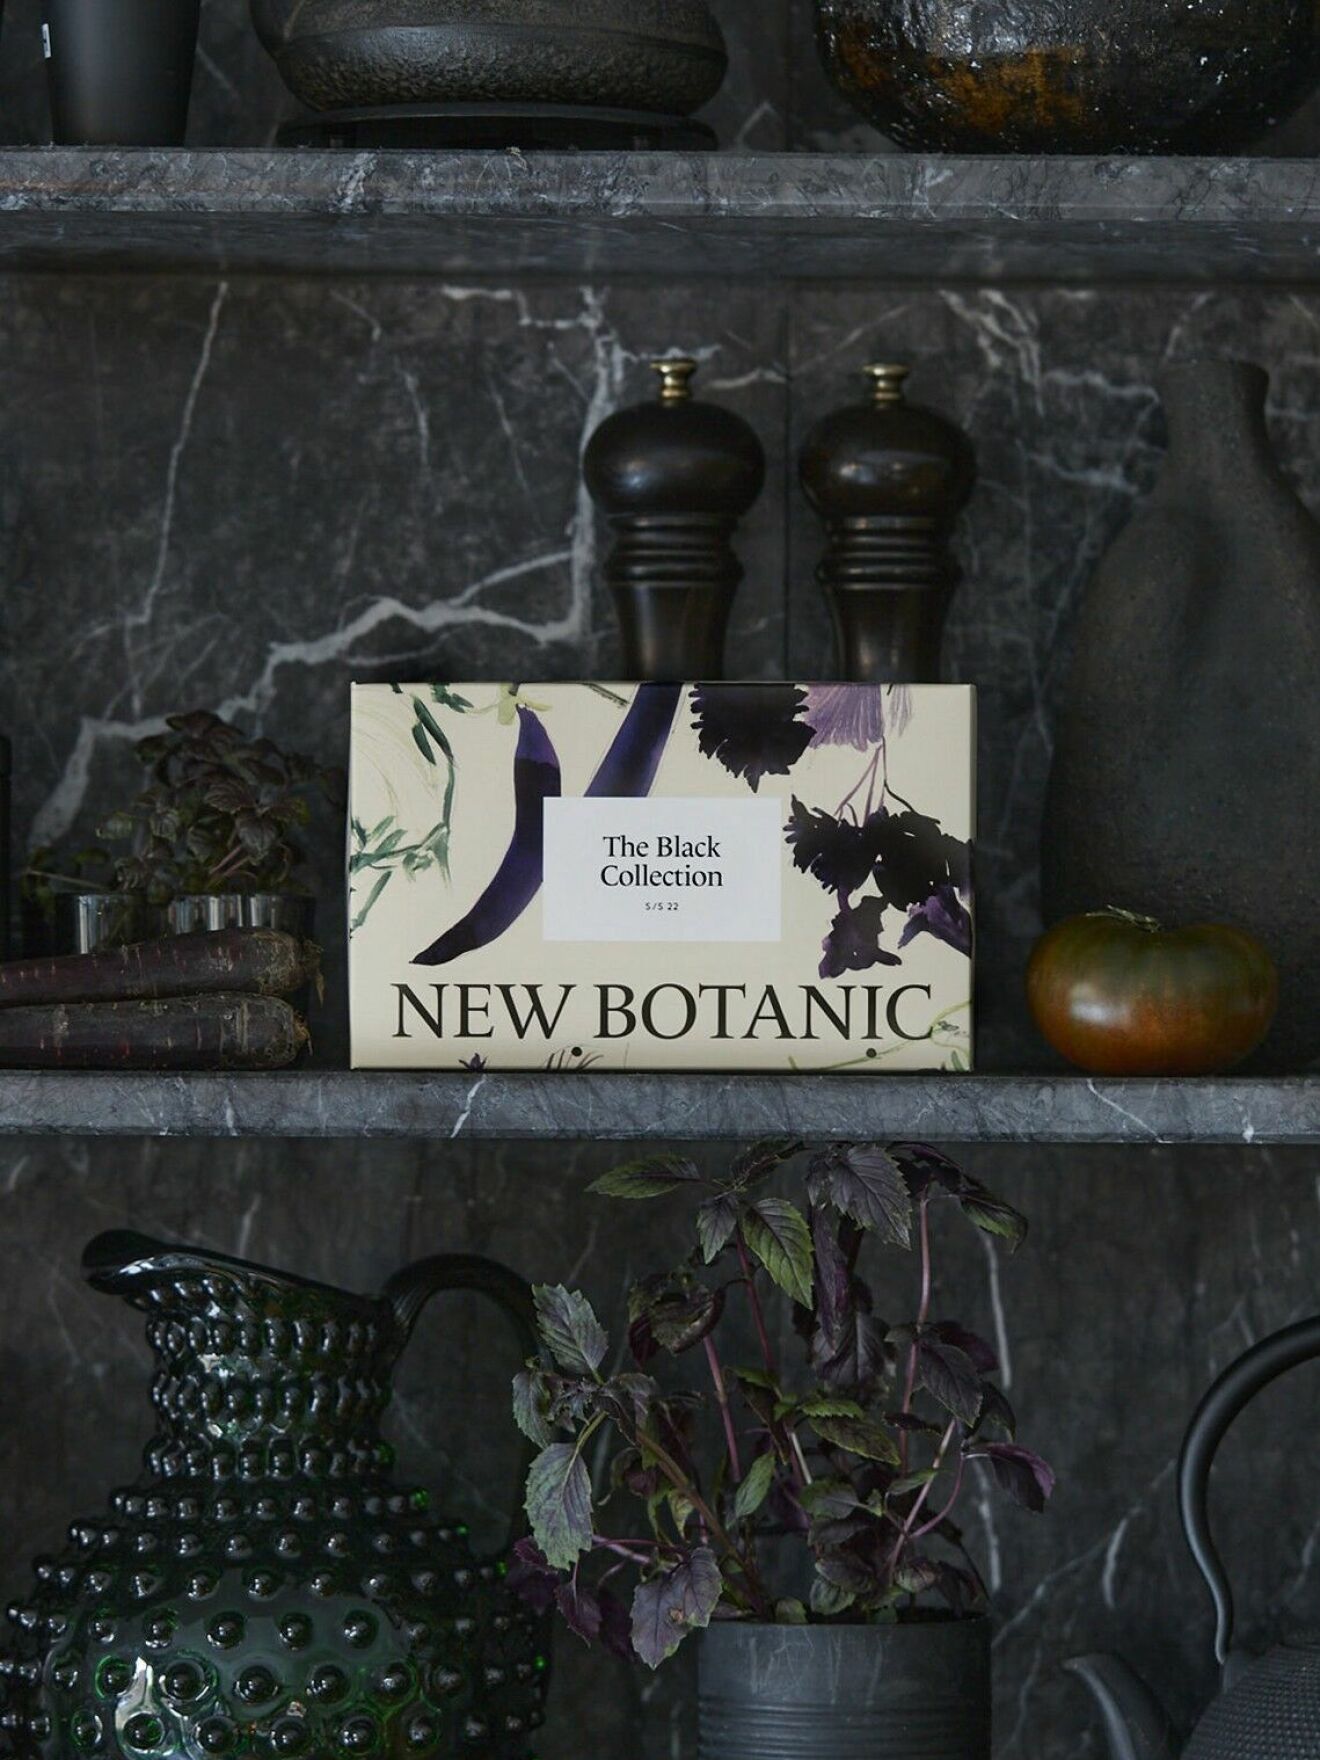 New botanic.